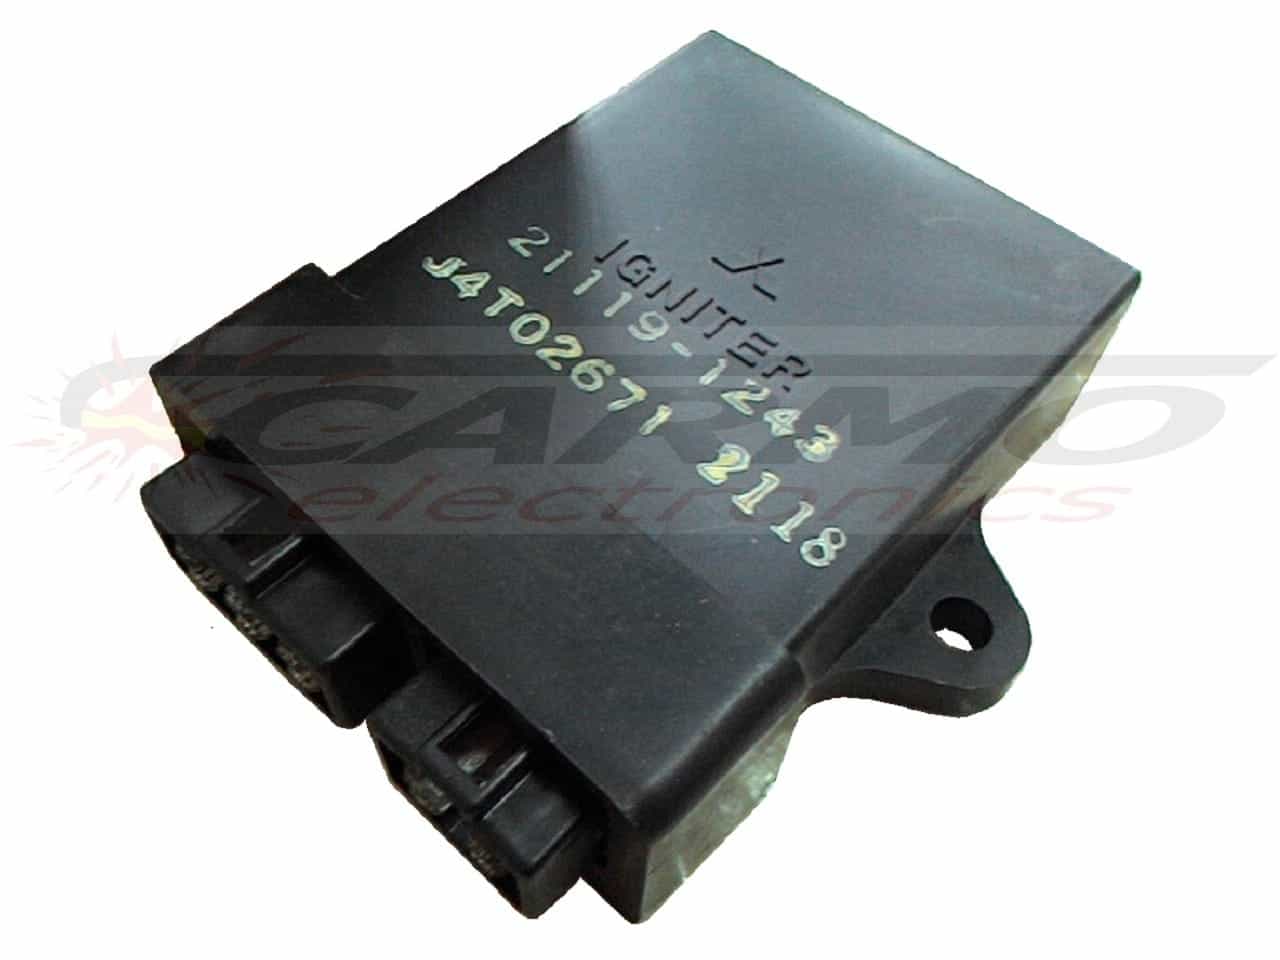 ZX10 ZX-10 tomcat CDI TCI igniter module (21119-1243, J4T02671)